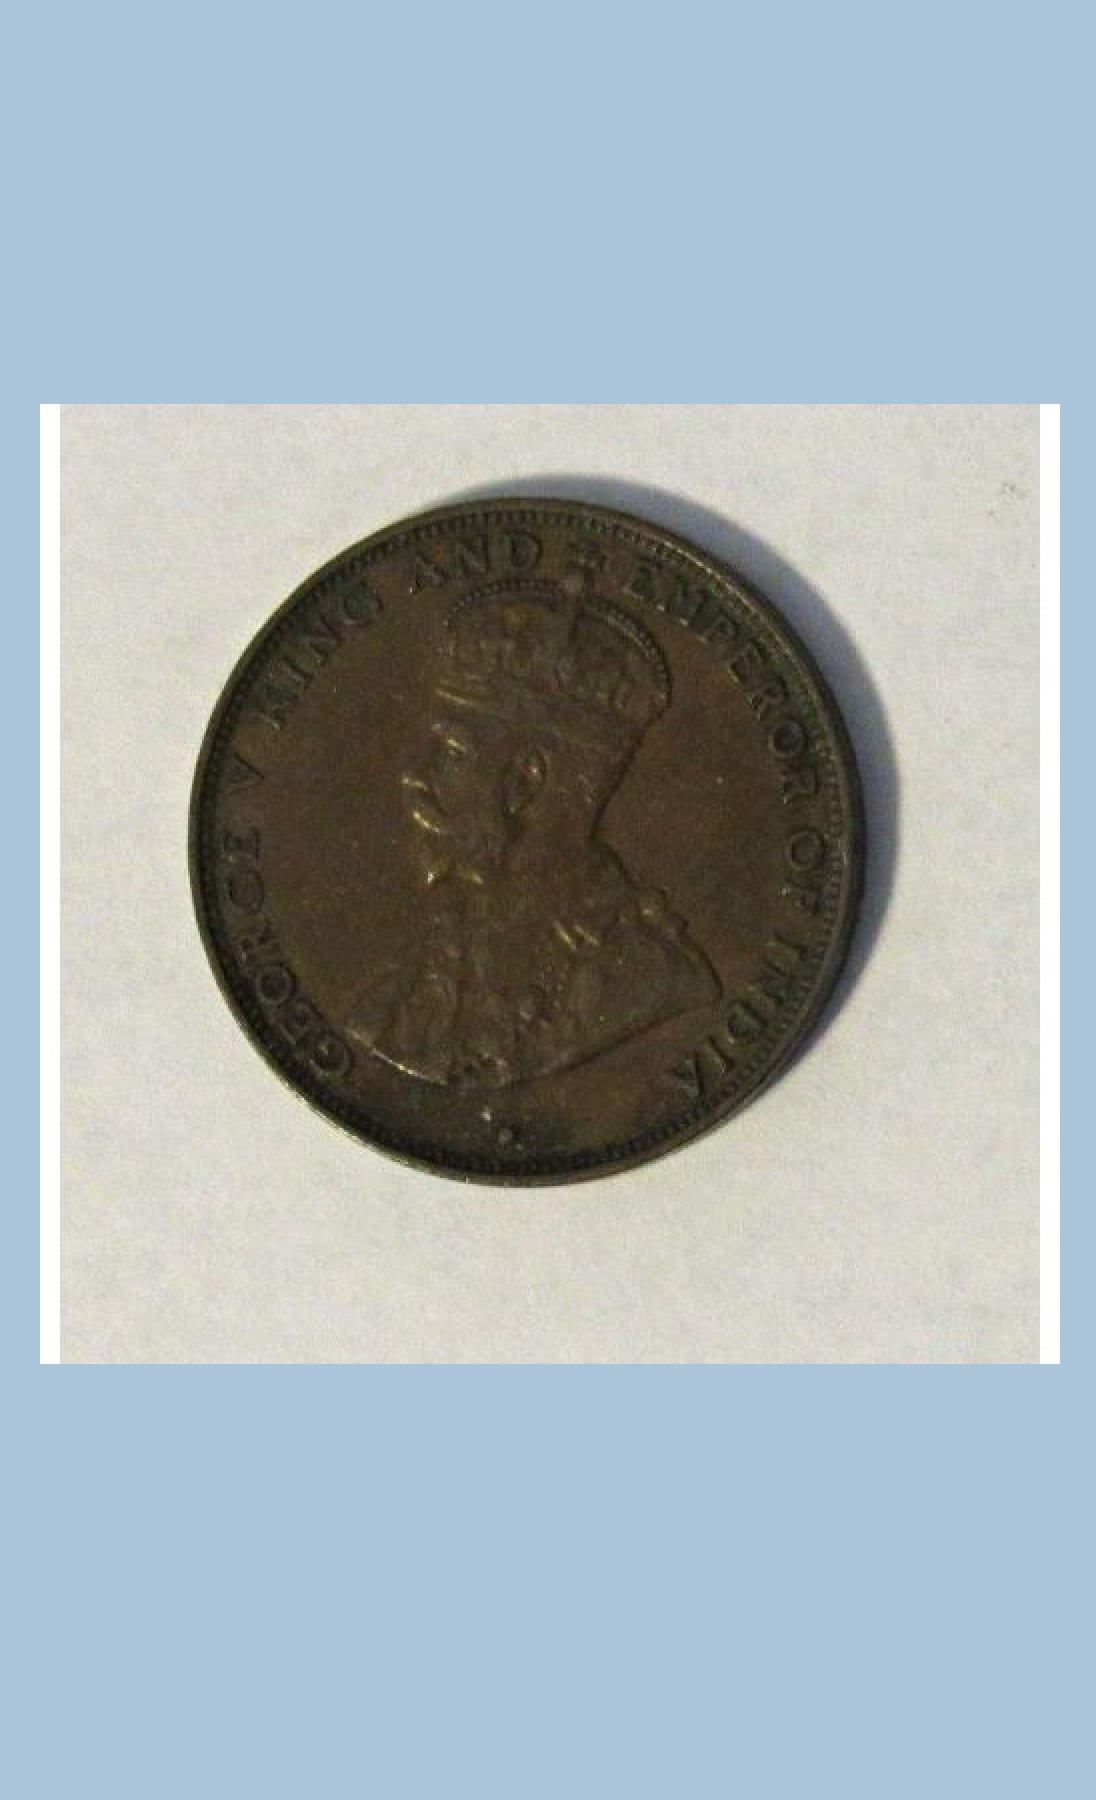 Hong Kong One Cent Coin - 1934